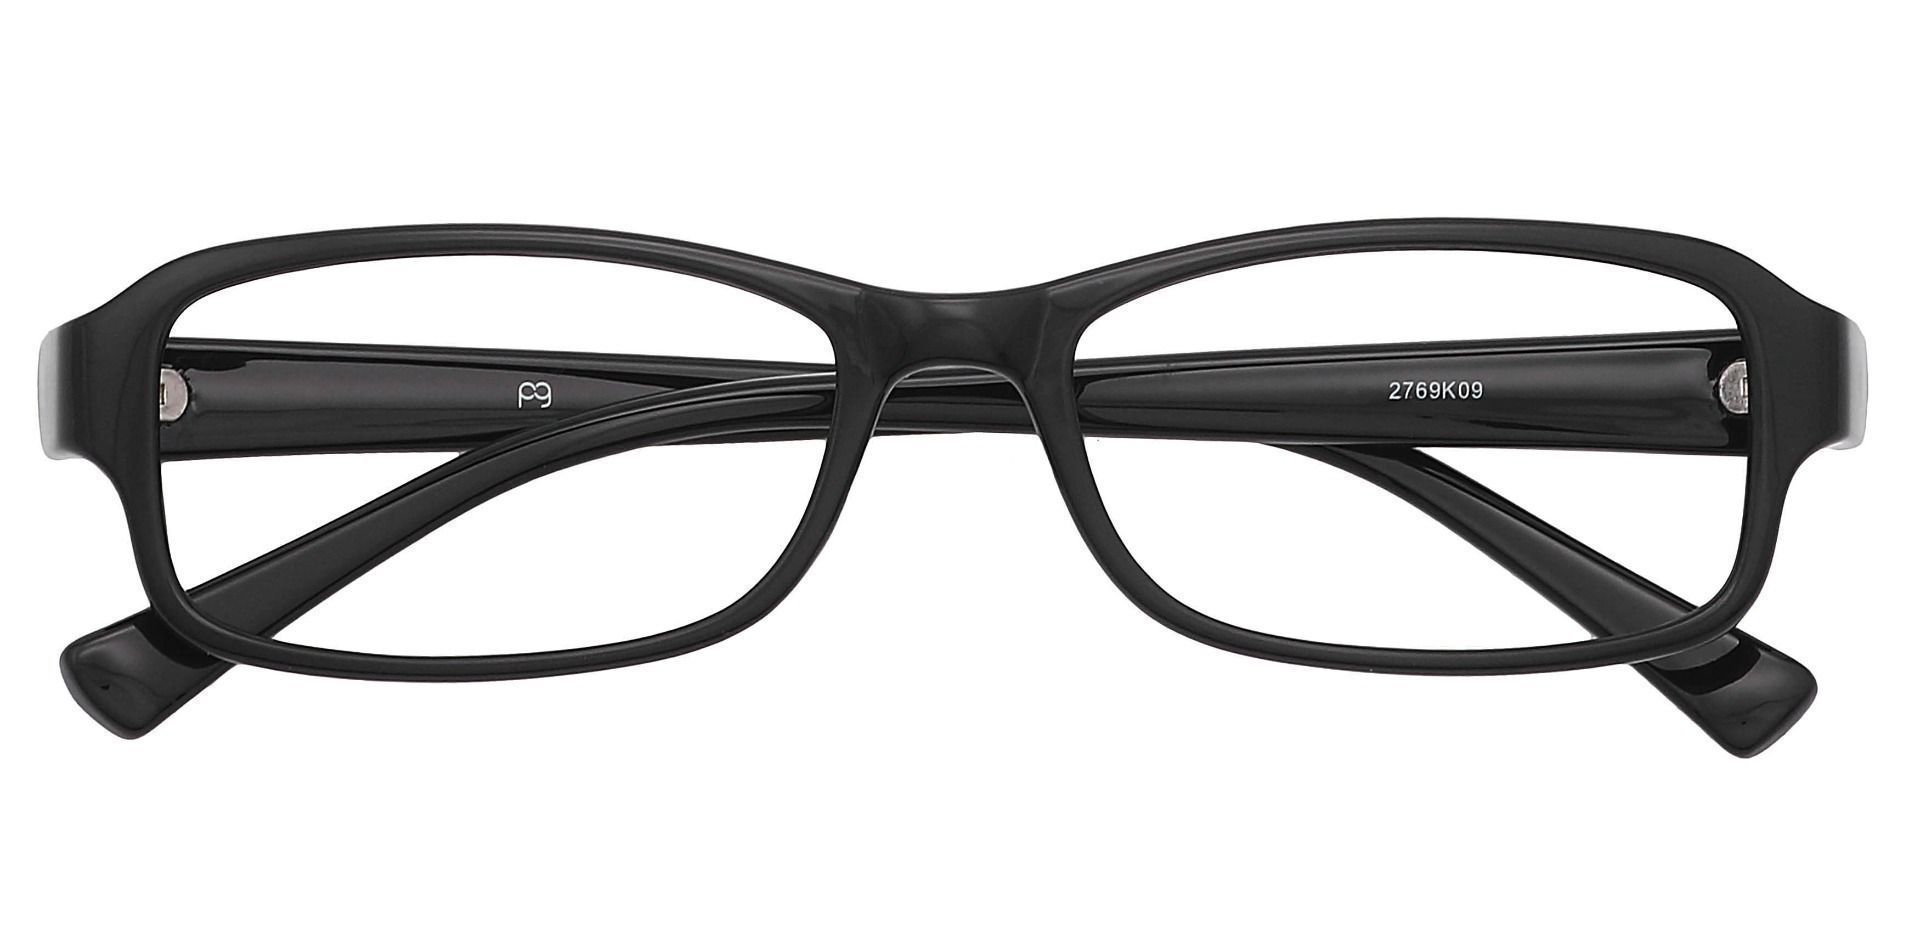 Rowan Rectangle Eyeglasses Frame - Glossy Black 